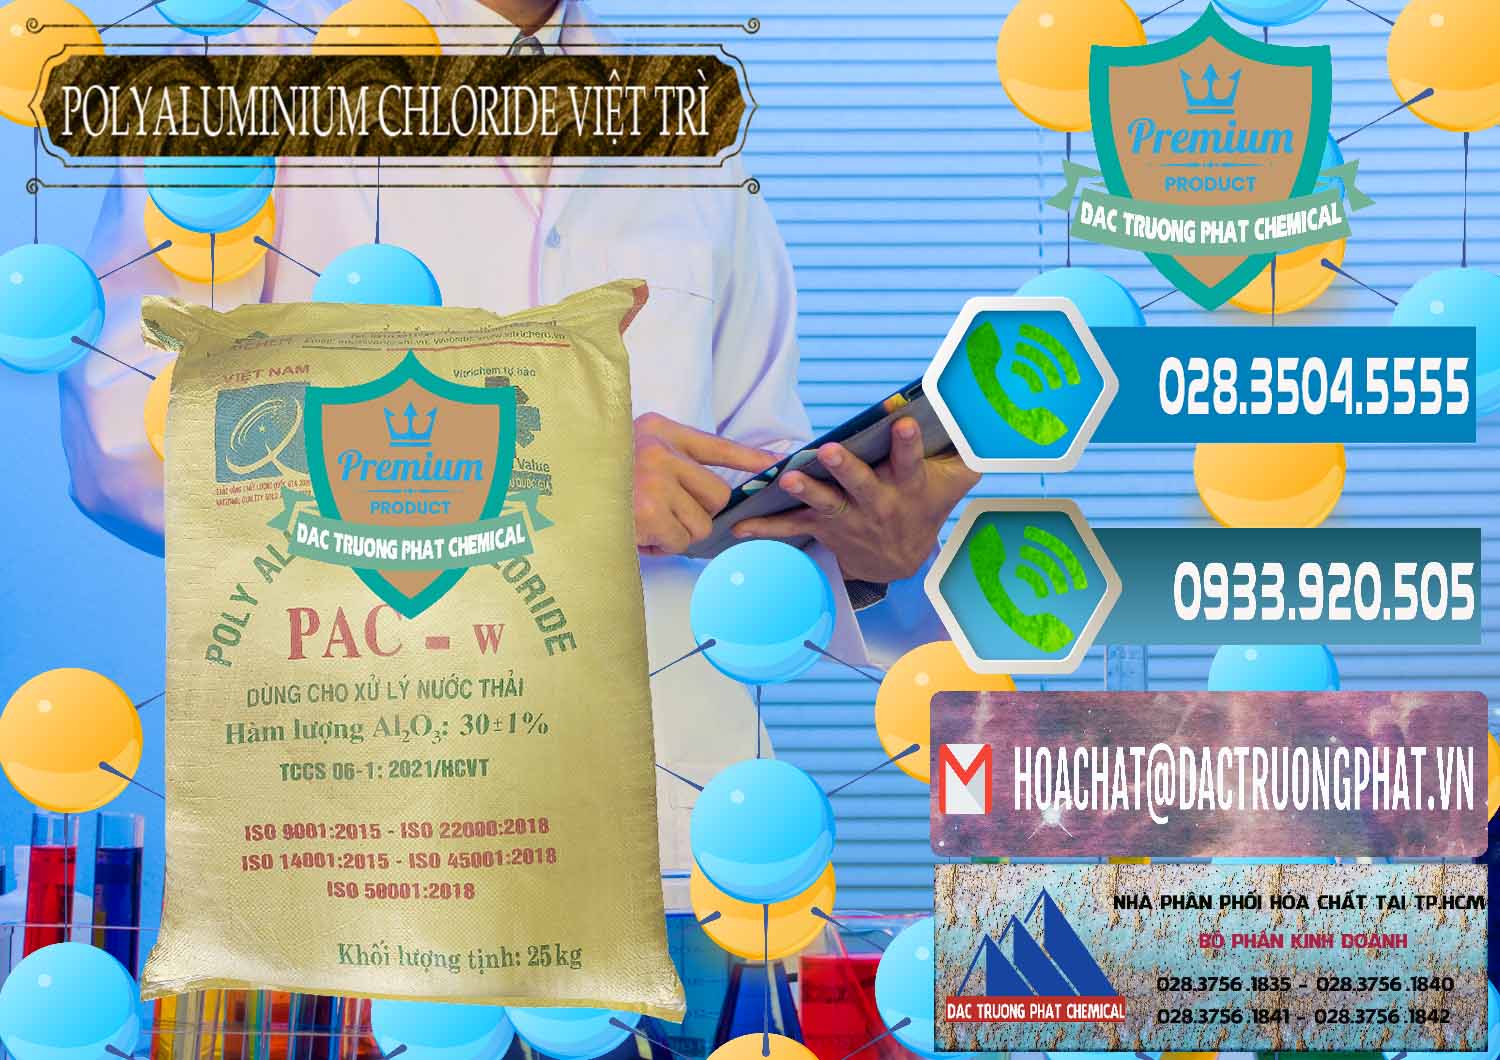 Nơi bán ( phân phối ) PAC - Polyaluminium Chloride Việt Trì Việt Nam - 0487 - Công ty chuyên cung ứng - phân phối hóa chất tại TP.HCM - congtyhoachat.net